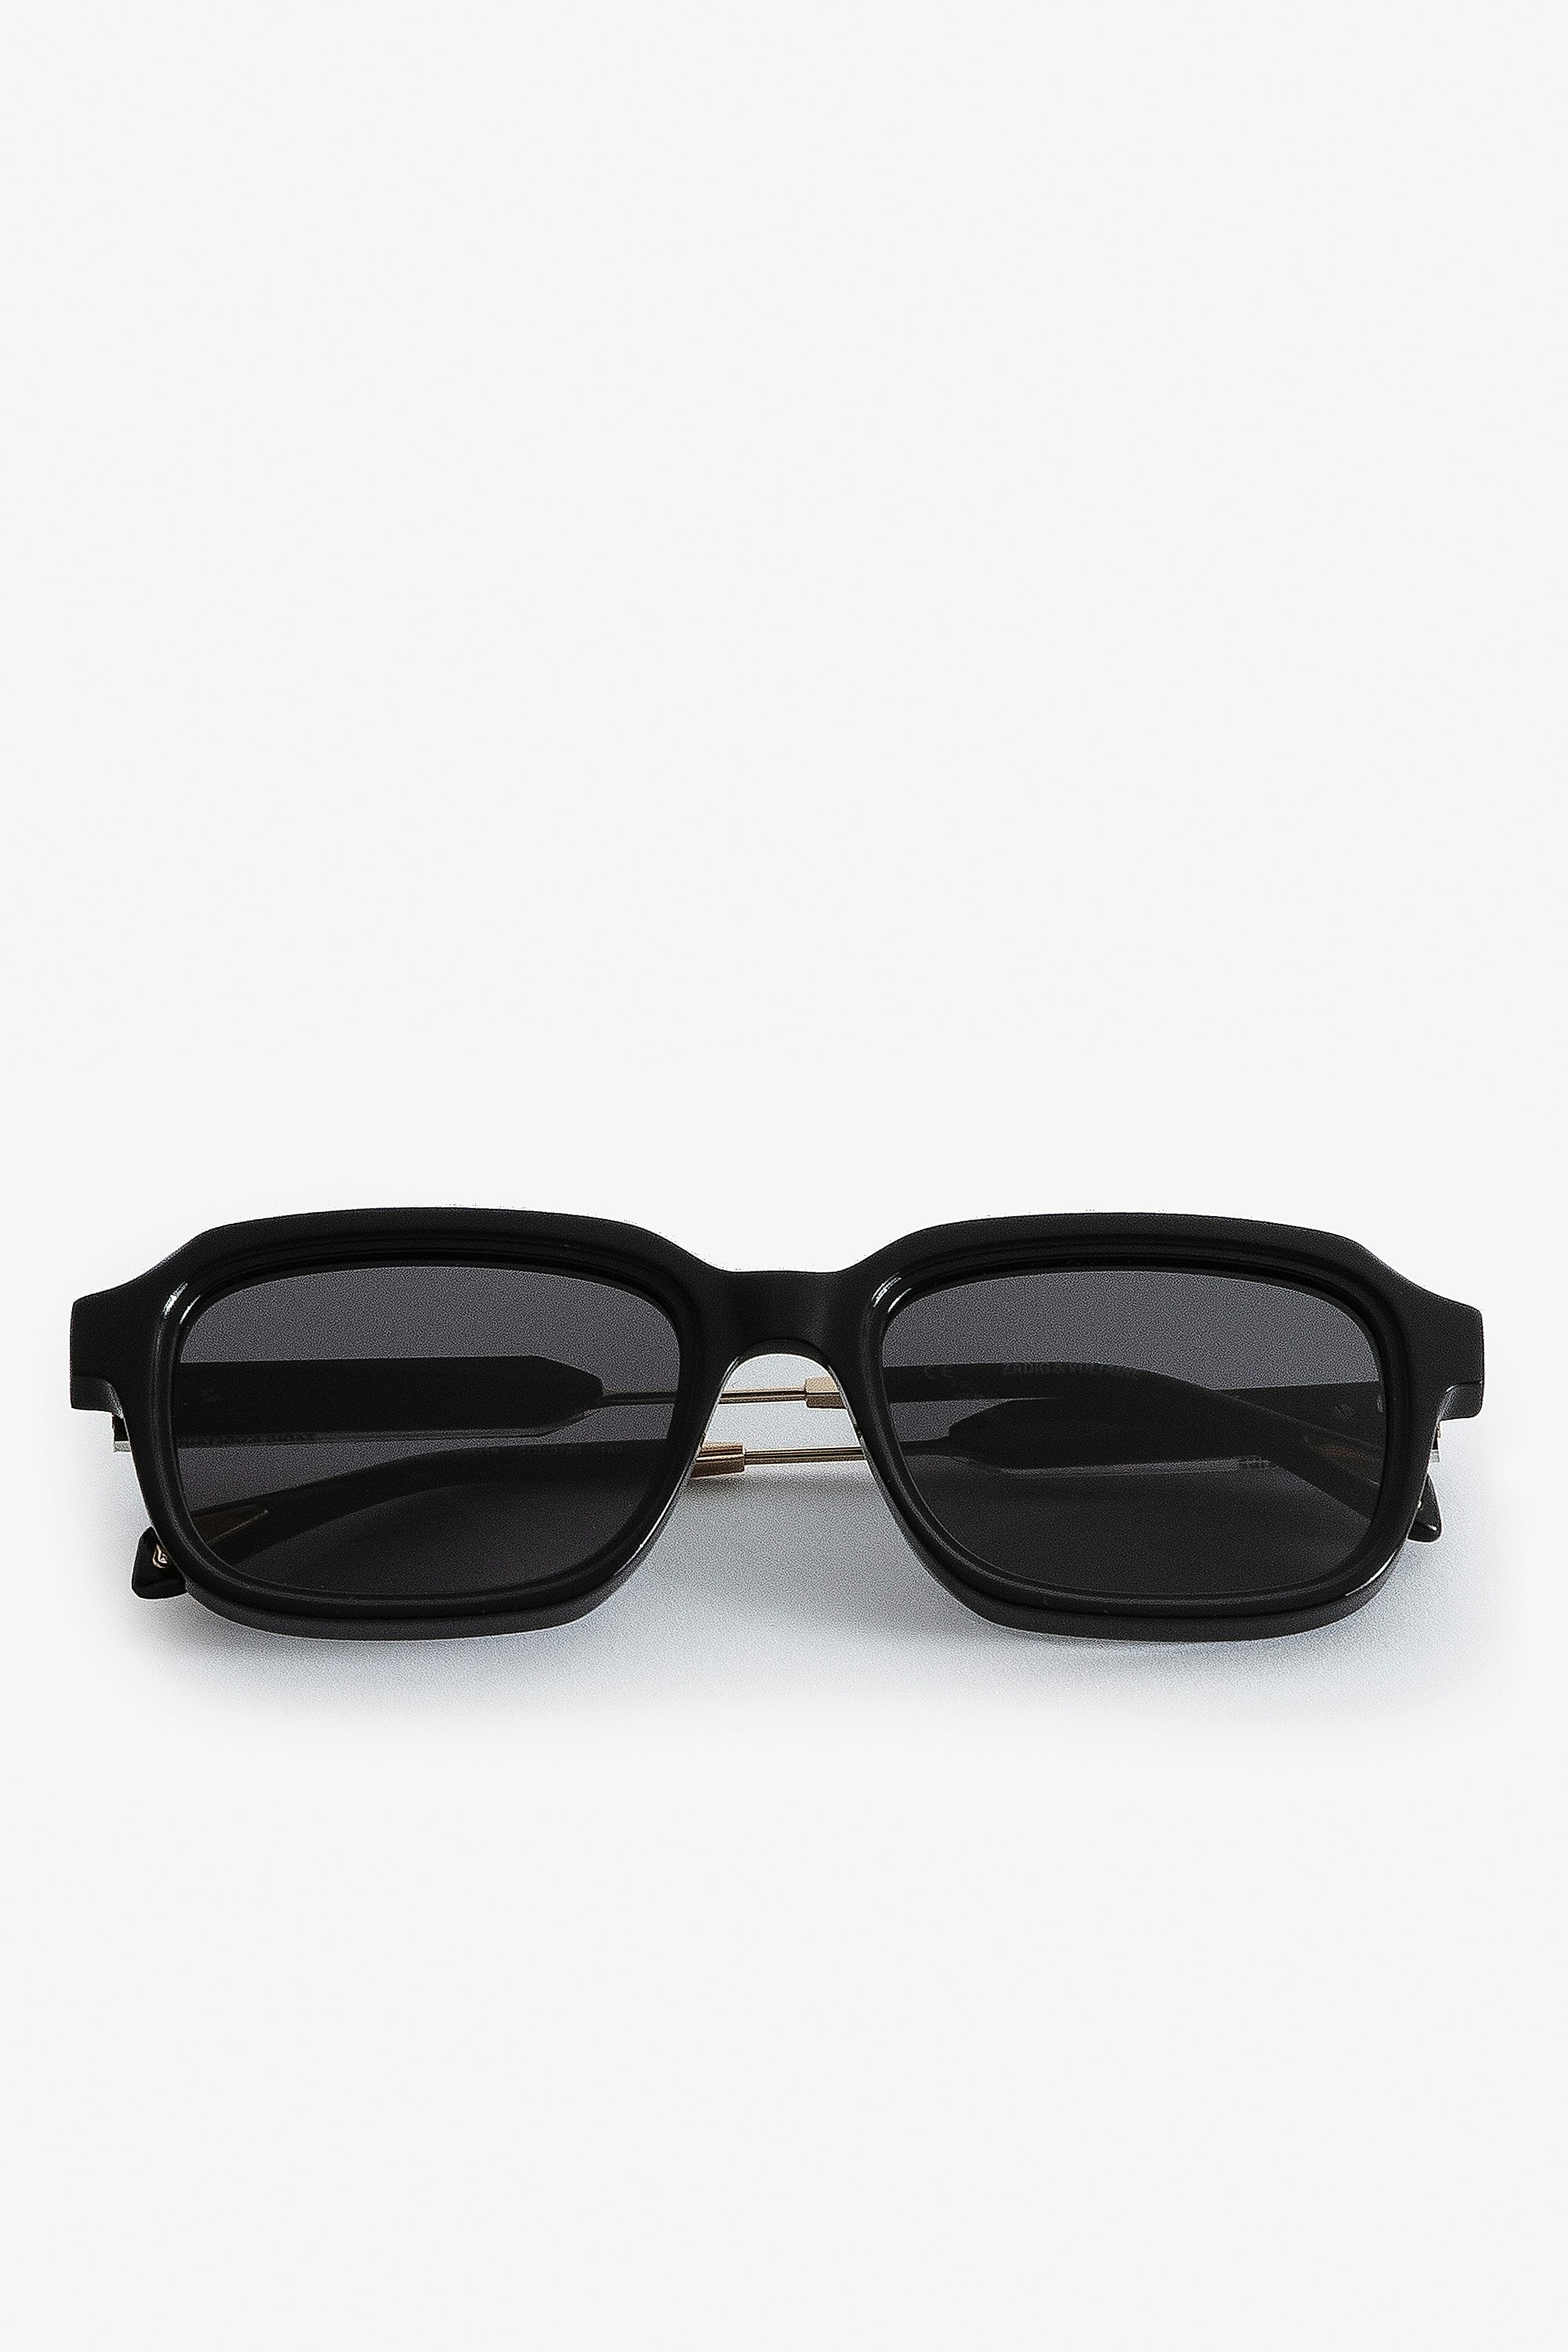 Sonnenbrille ZV Squared - Unisex-Sonnenbrille aus schwarzem Acetat in Squared-Form.